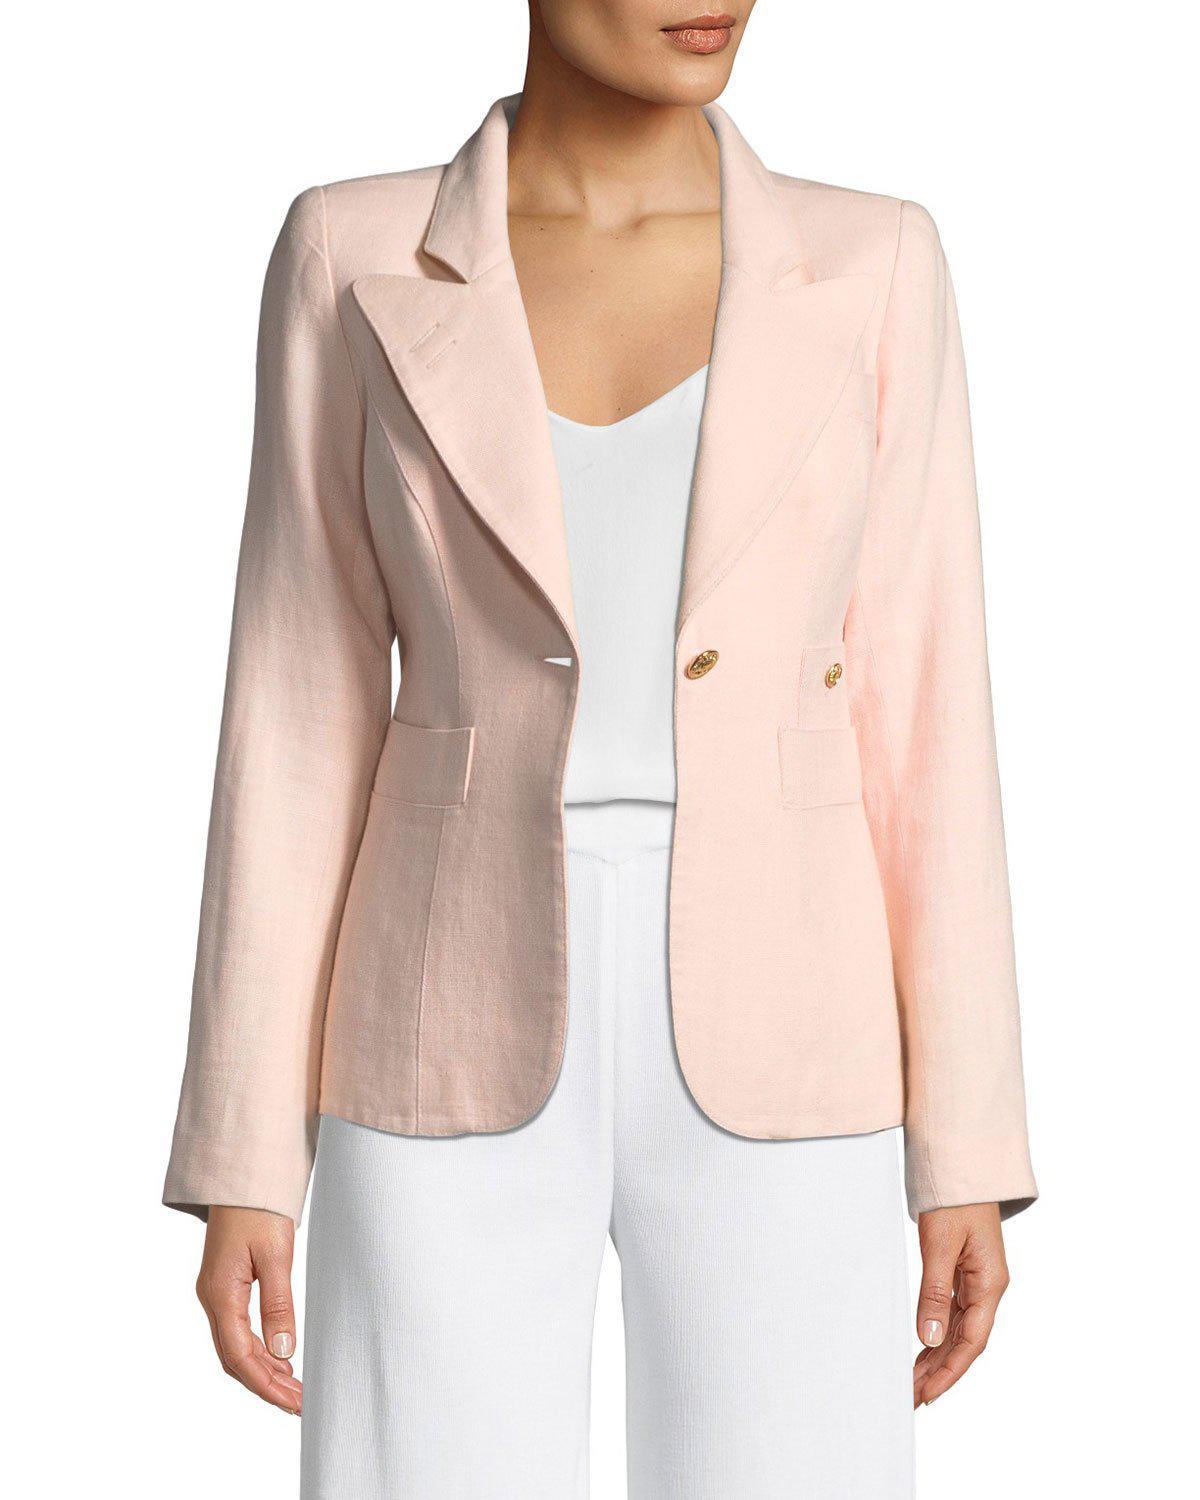 Smythe Duchess One-button Linen Blazer in Light Pink (Pink) - Lyst